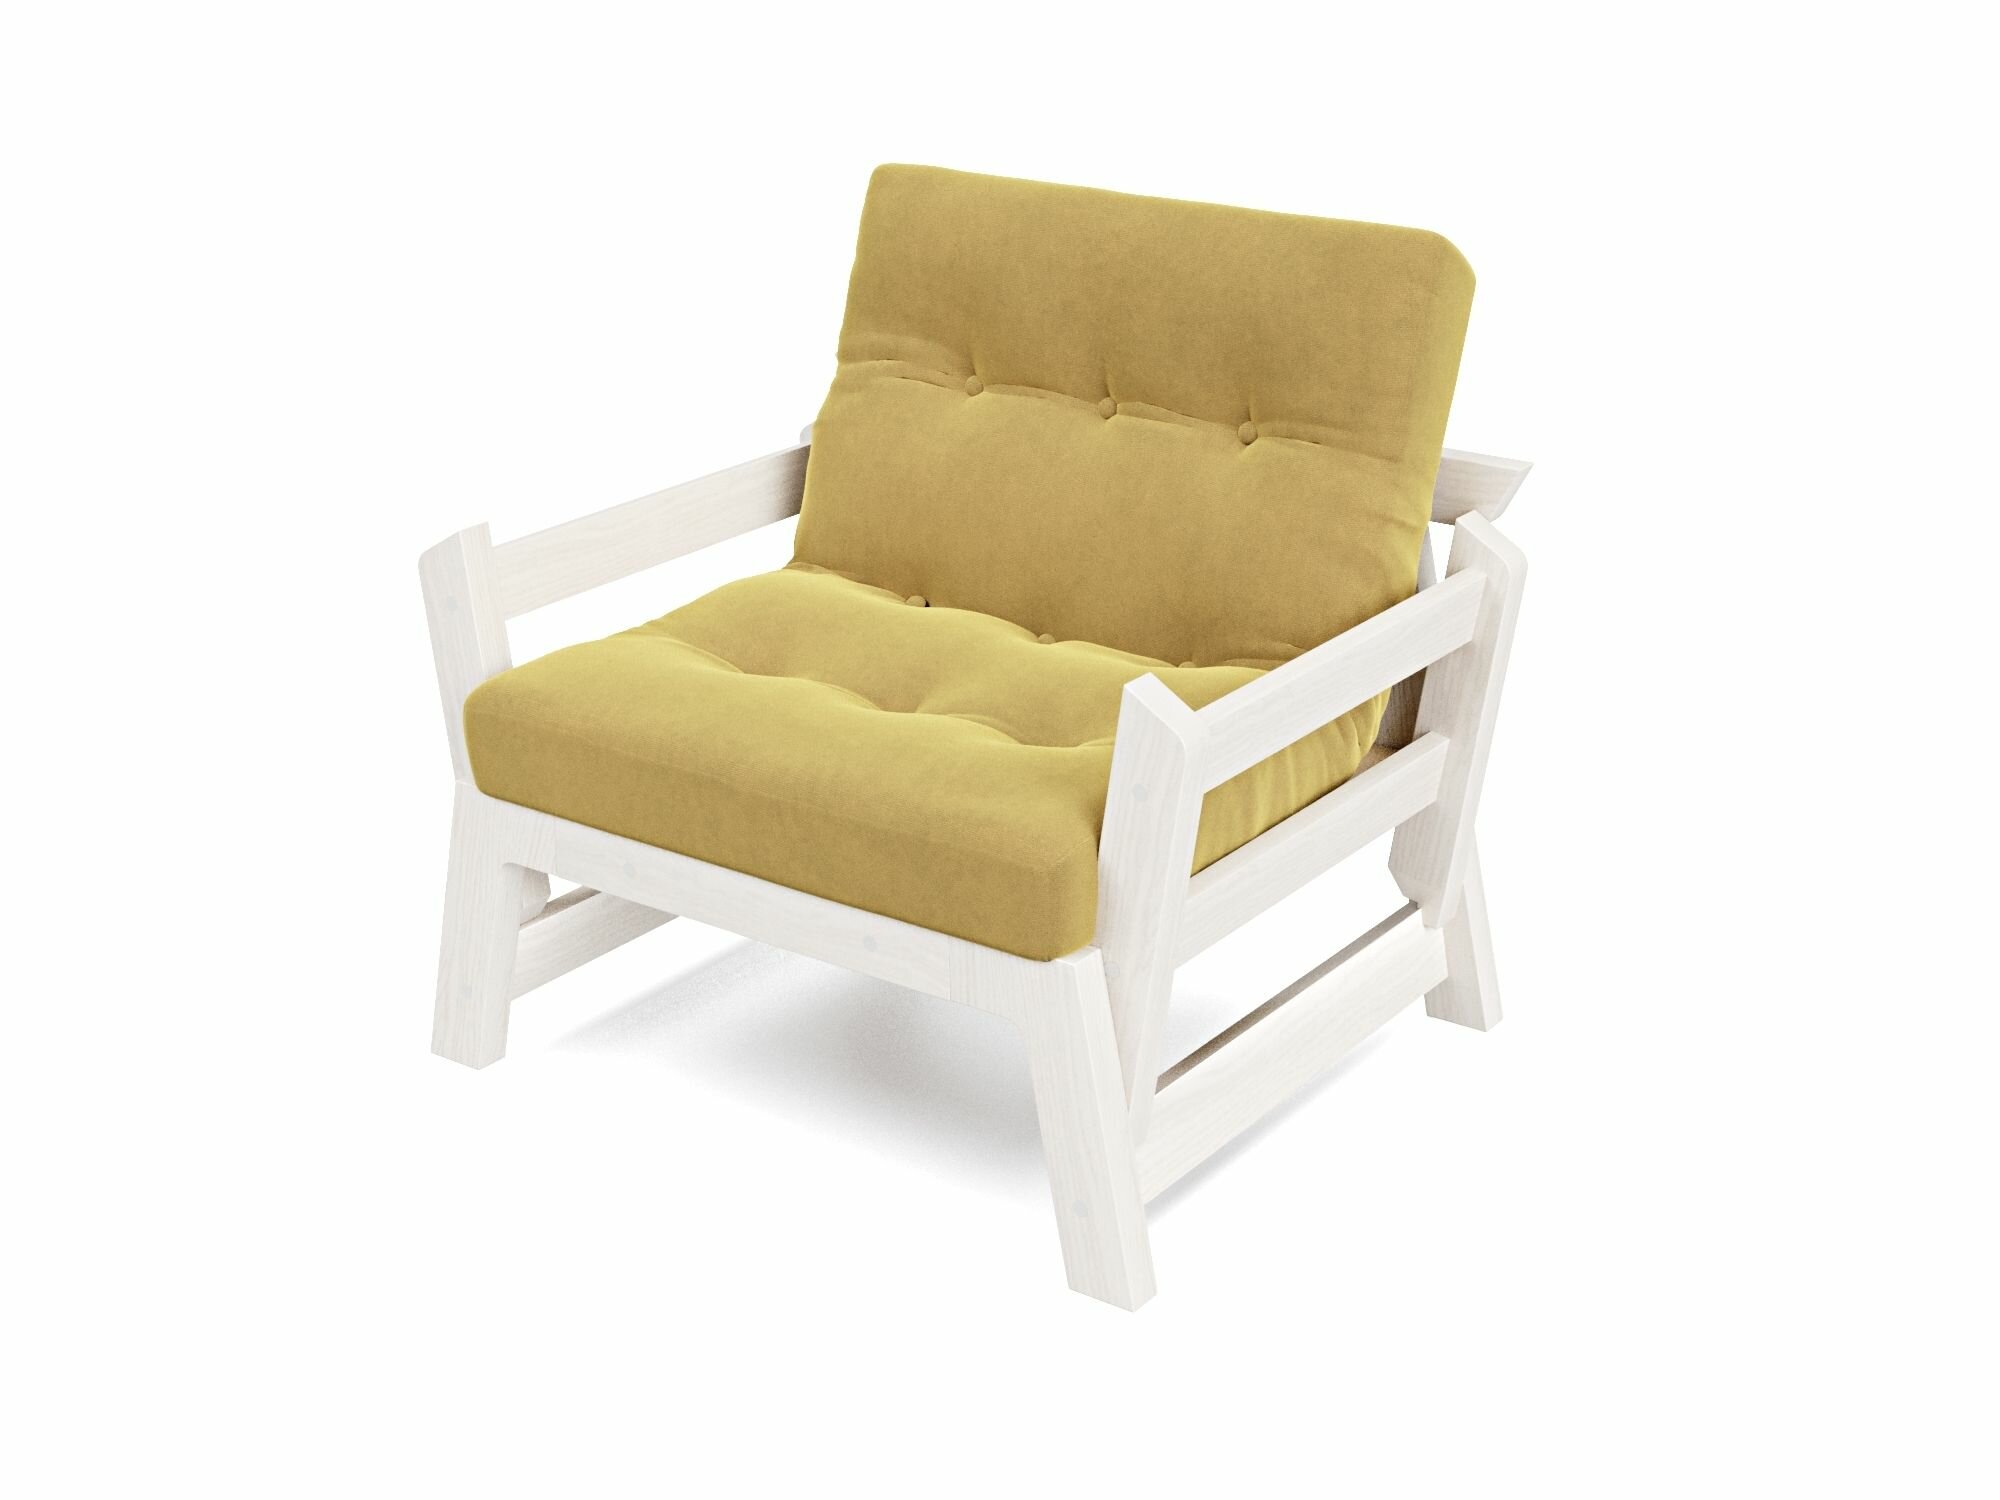 Кресло Мод, желтый-беленый дуб, велюр, массив дерева, с подлокотниками, садовое, на дачу, скандинавский лофт